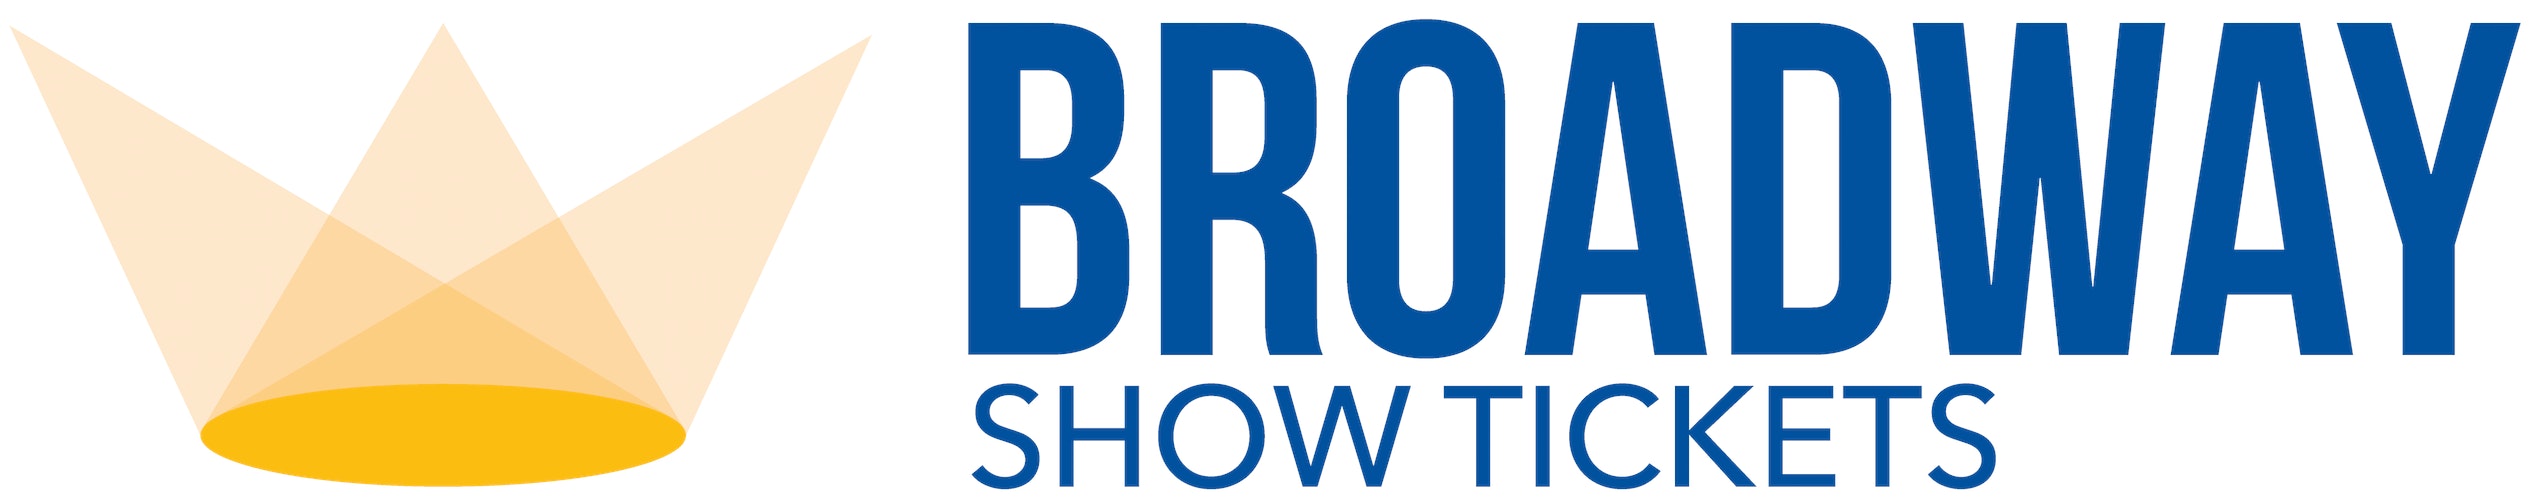 Broadway Show Logo